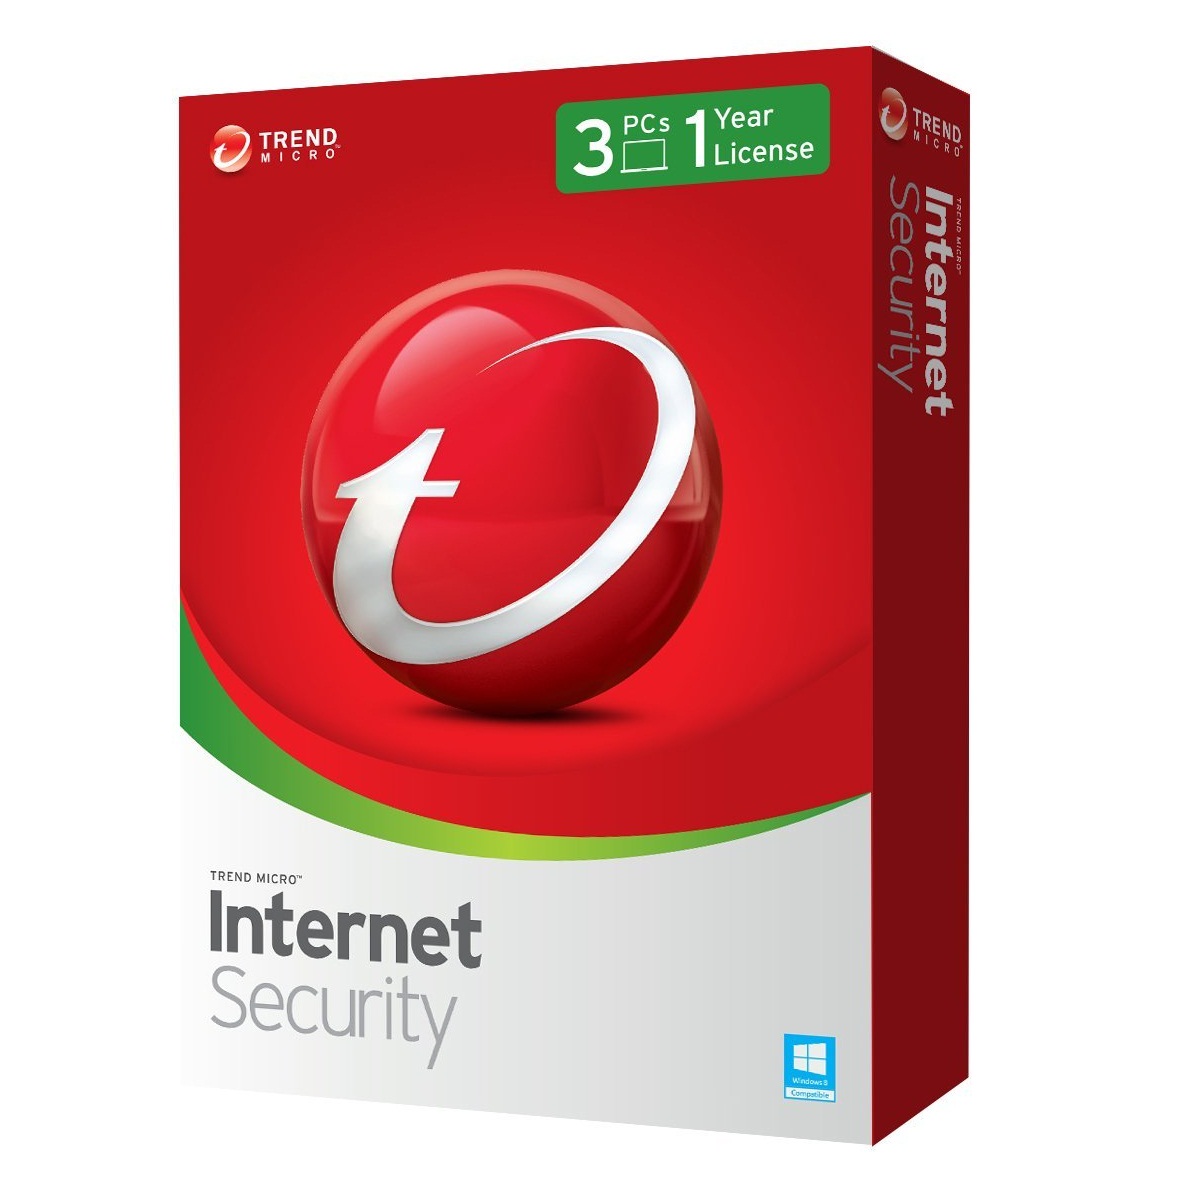 Phần mềm diệt virut Trendmicro Internet security Titanium 2012 (dùng cho 1 PC / thời hạn 12 tháng)